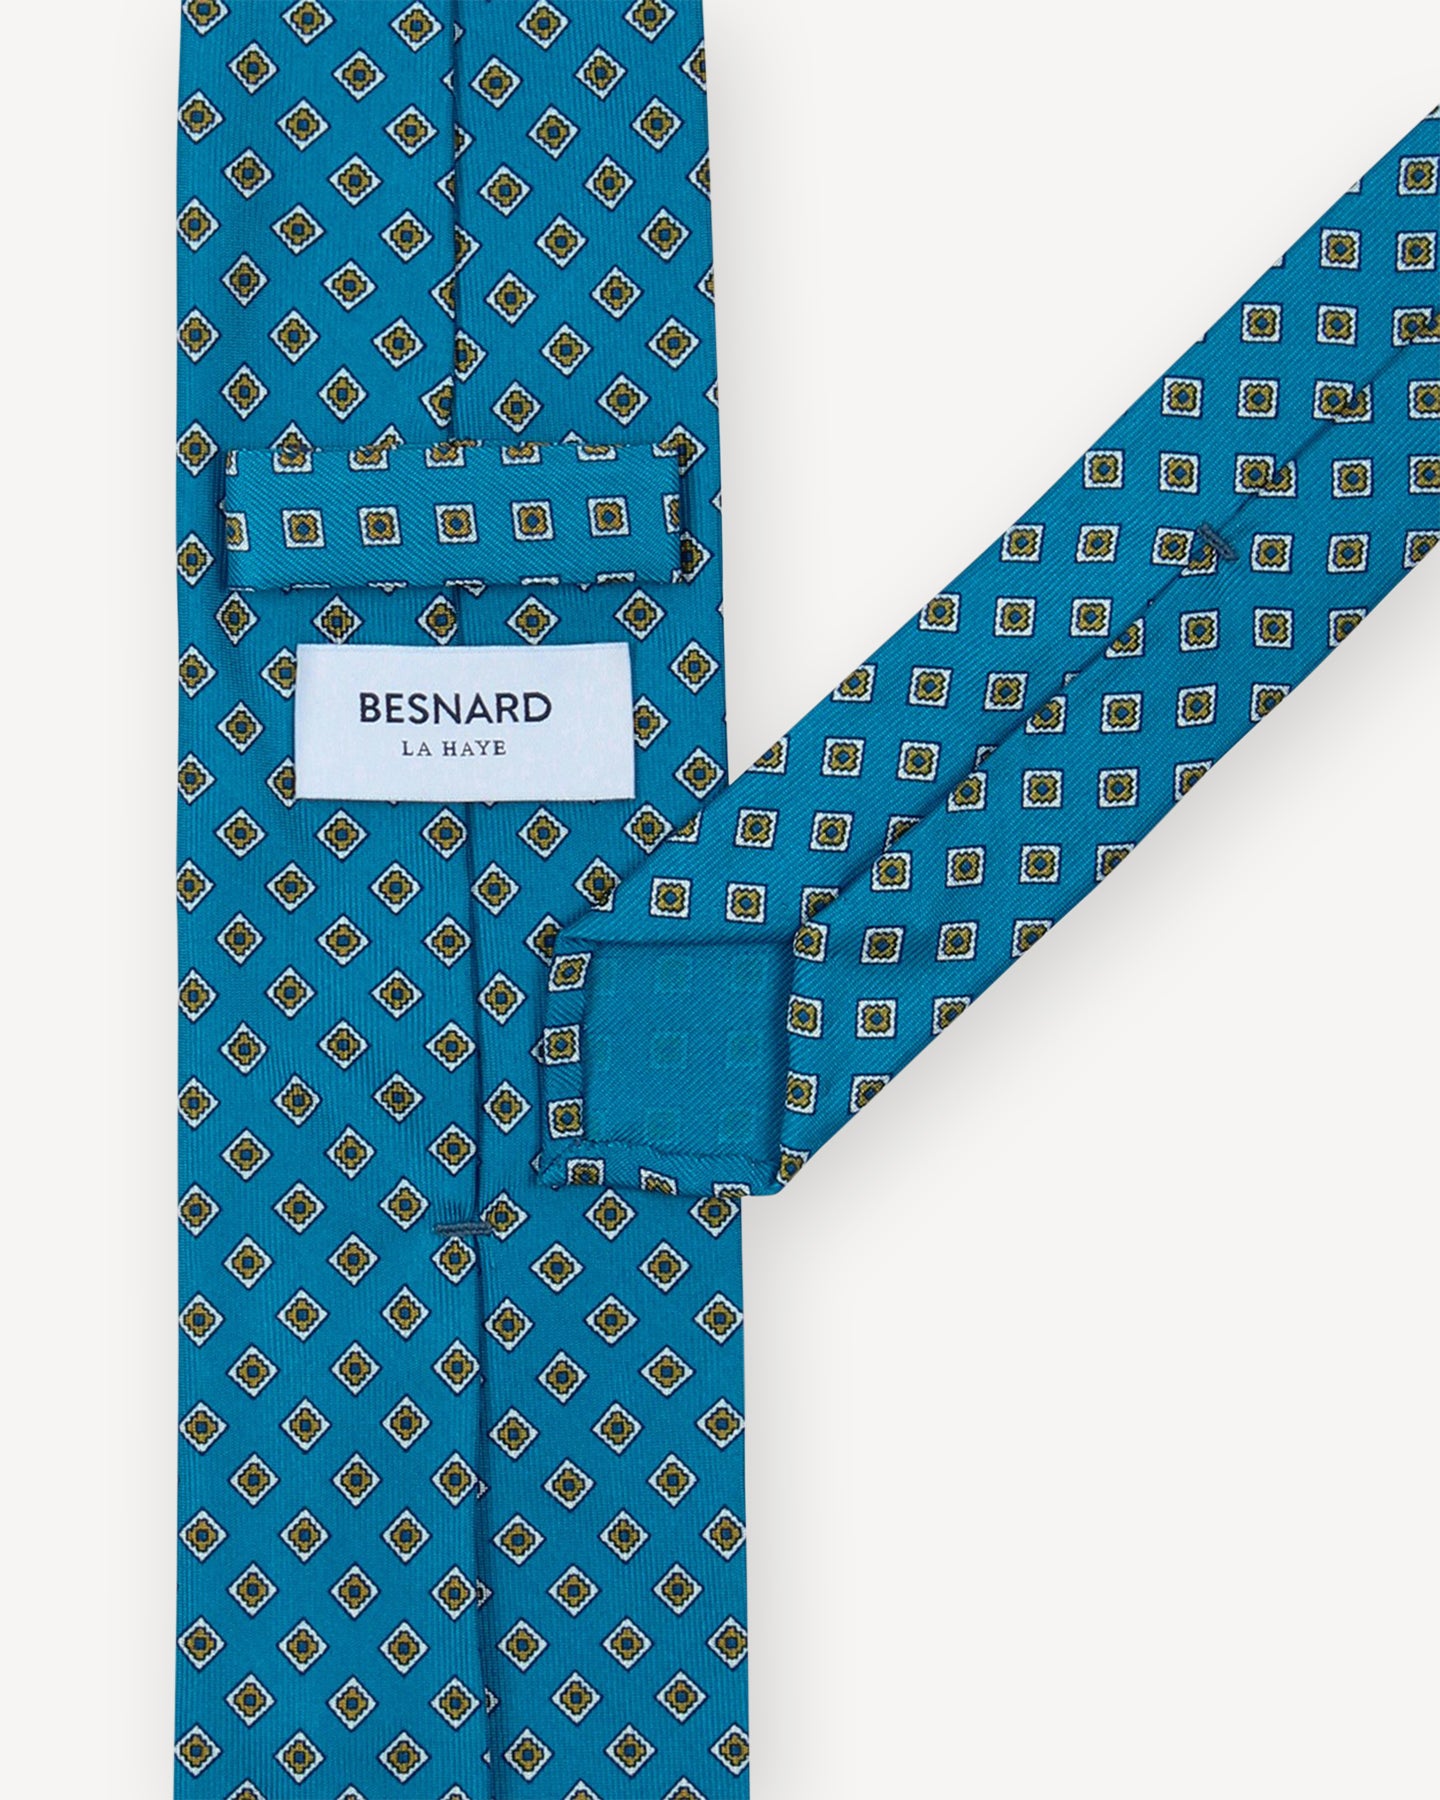 Blue Printed Silk Tie with Diamond pattern